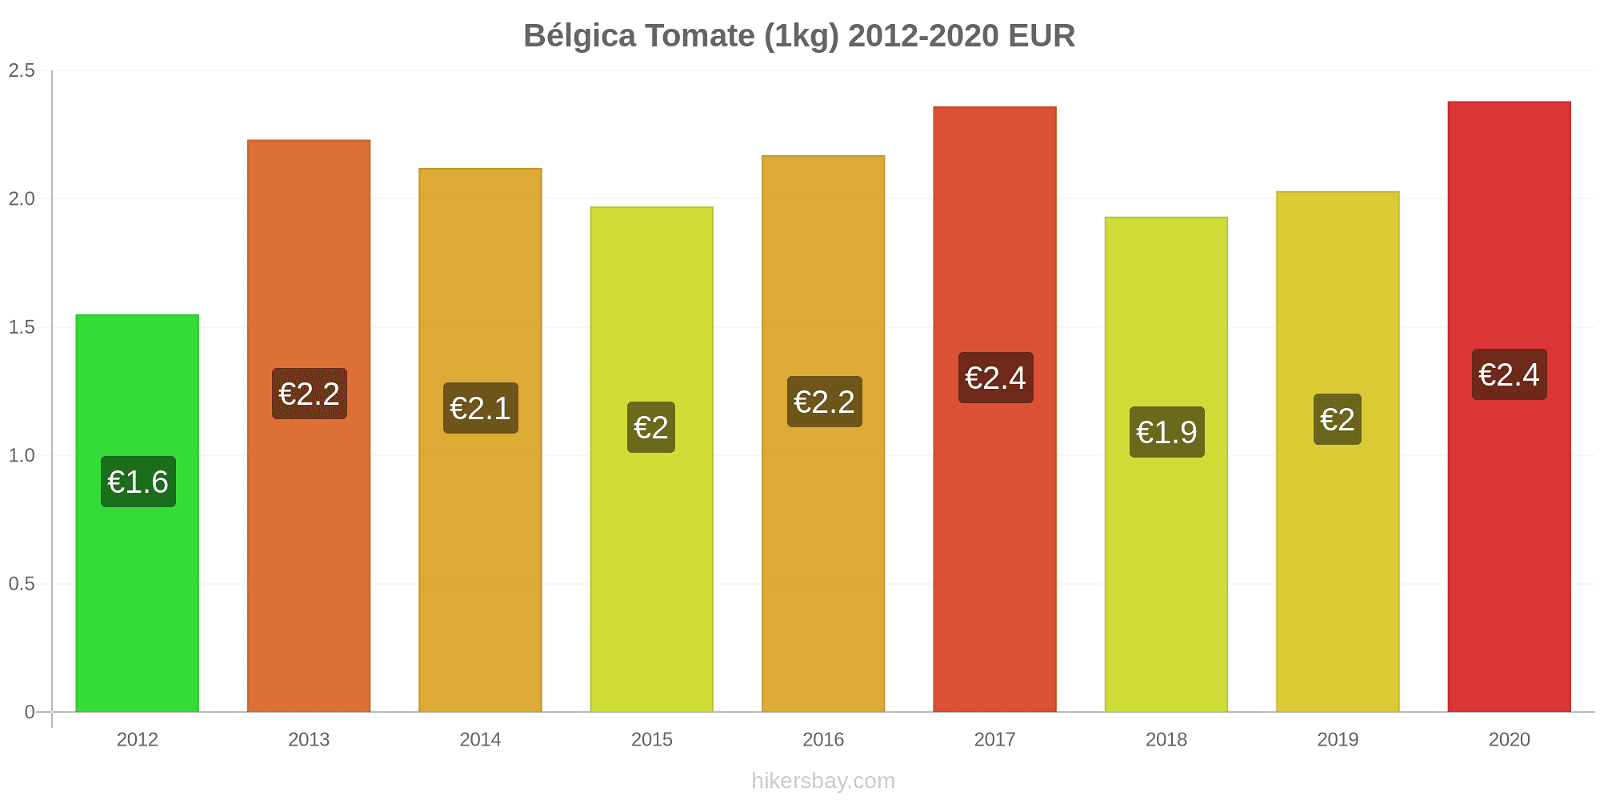 Bélgica variação de preço Tomate (1kg) hikersbay.com